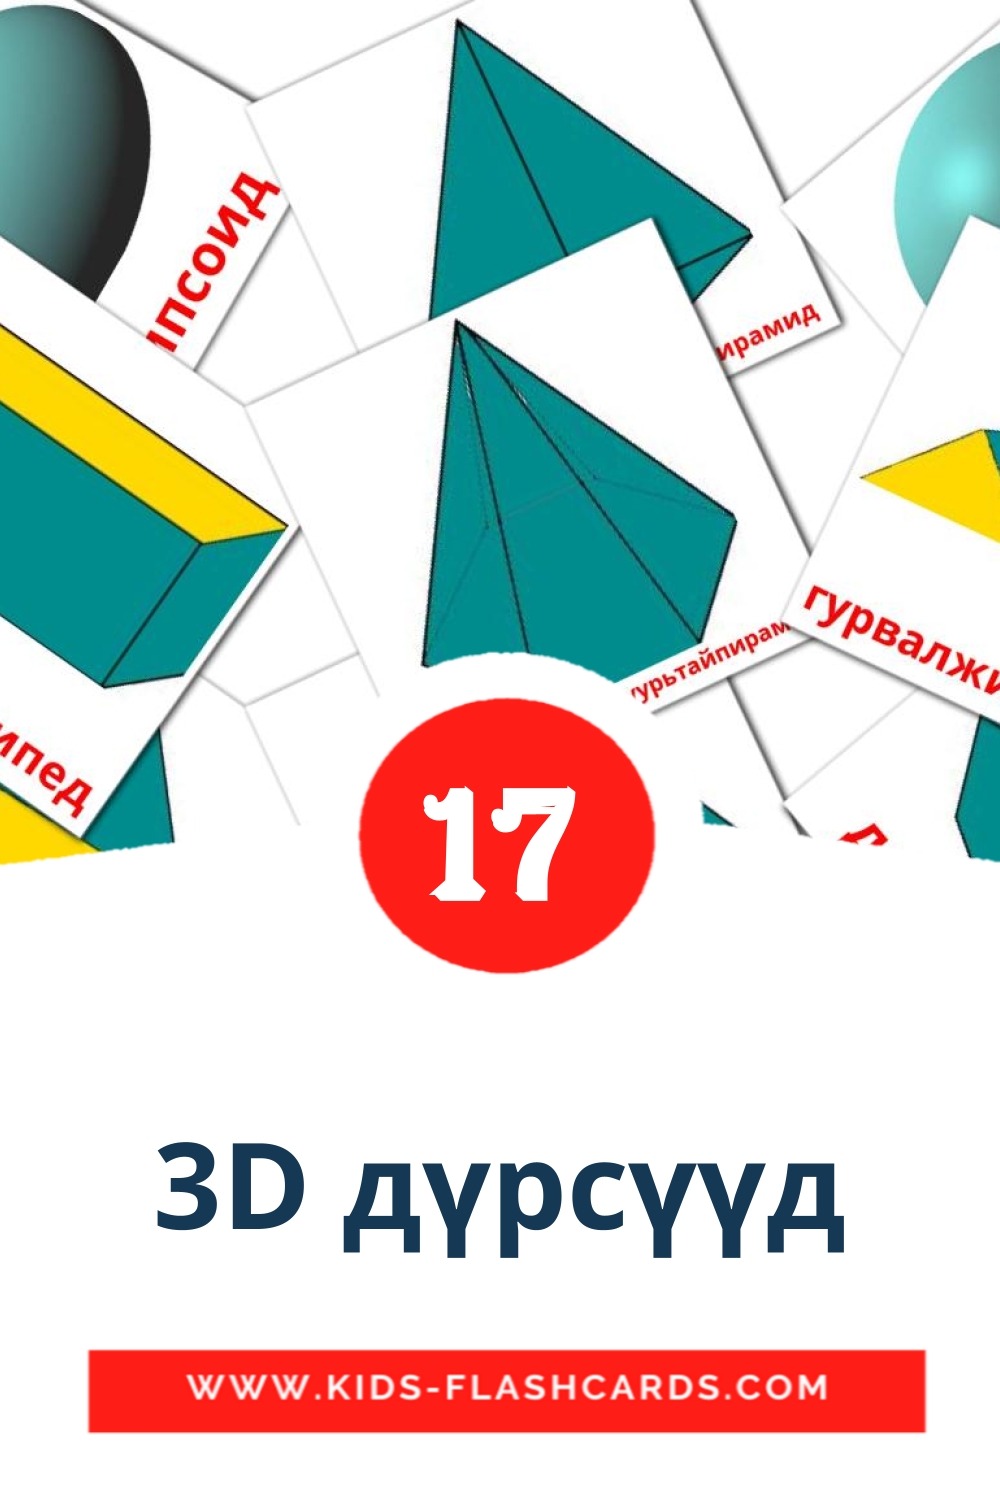 3D дүрсүүд на монгольском для Детского Сада (17 карточек)